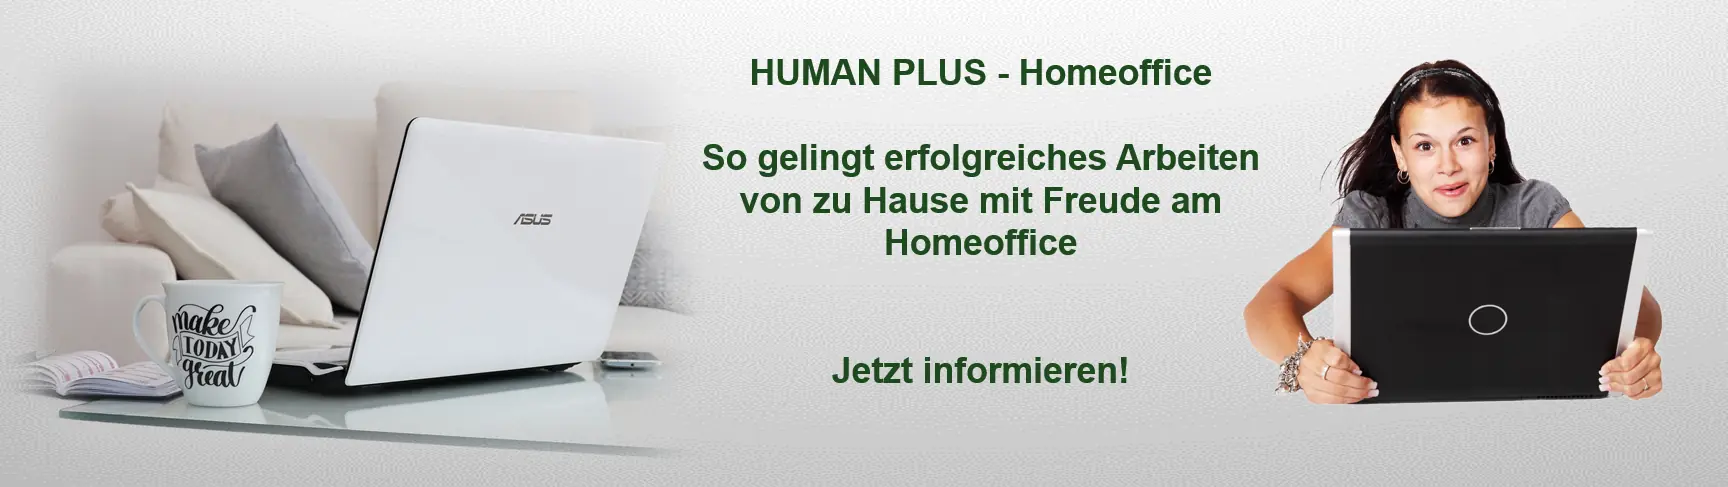 Image Header Human Plus Homeoffice - So macht Arbeiten von zu Hause Spaß